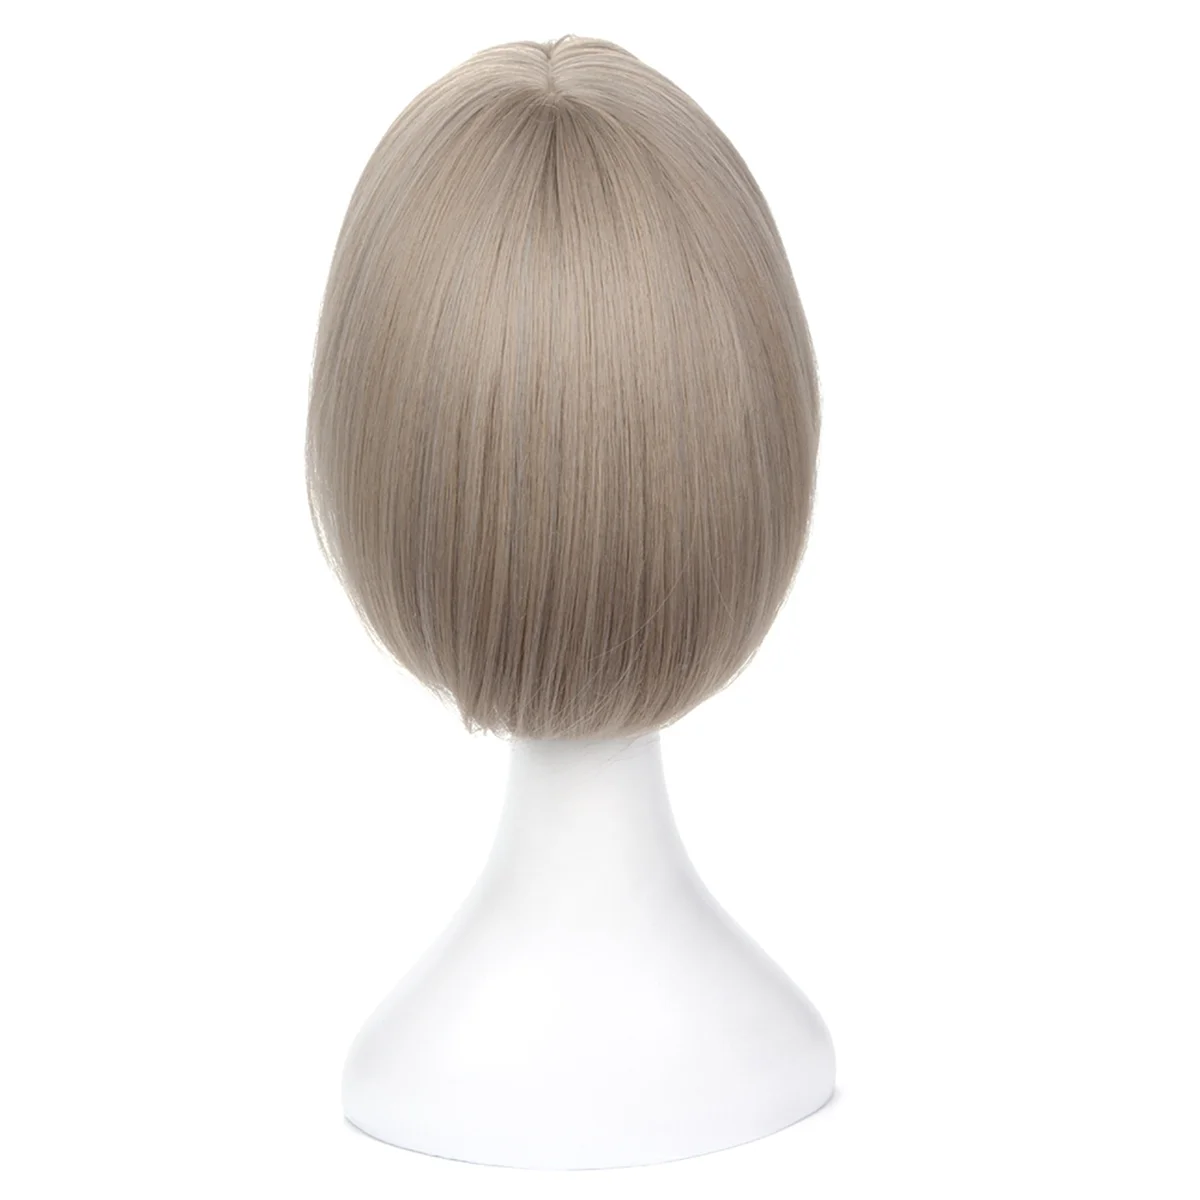 Parrucca Bob Bobo parrucca per le donne, parrucca corta dall'aspetto naturale, parrucca dritta per principianti per le versioni quotidiane della corea grigio